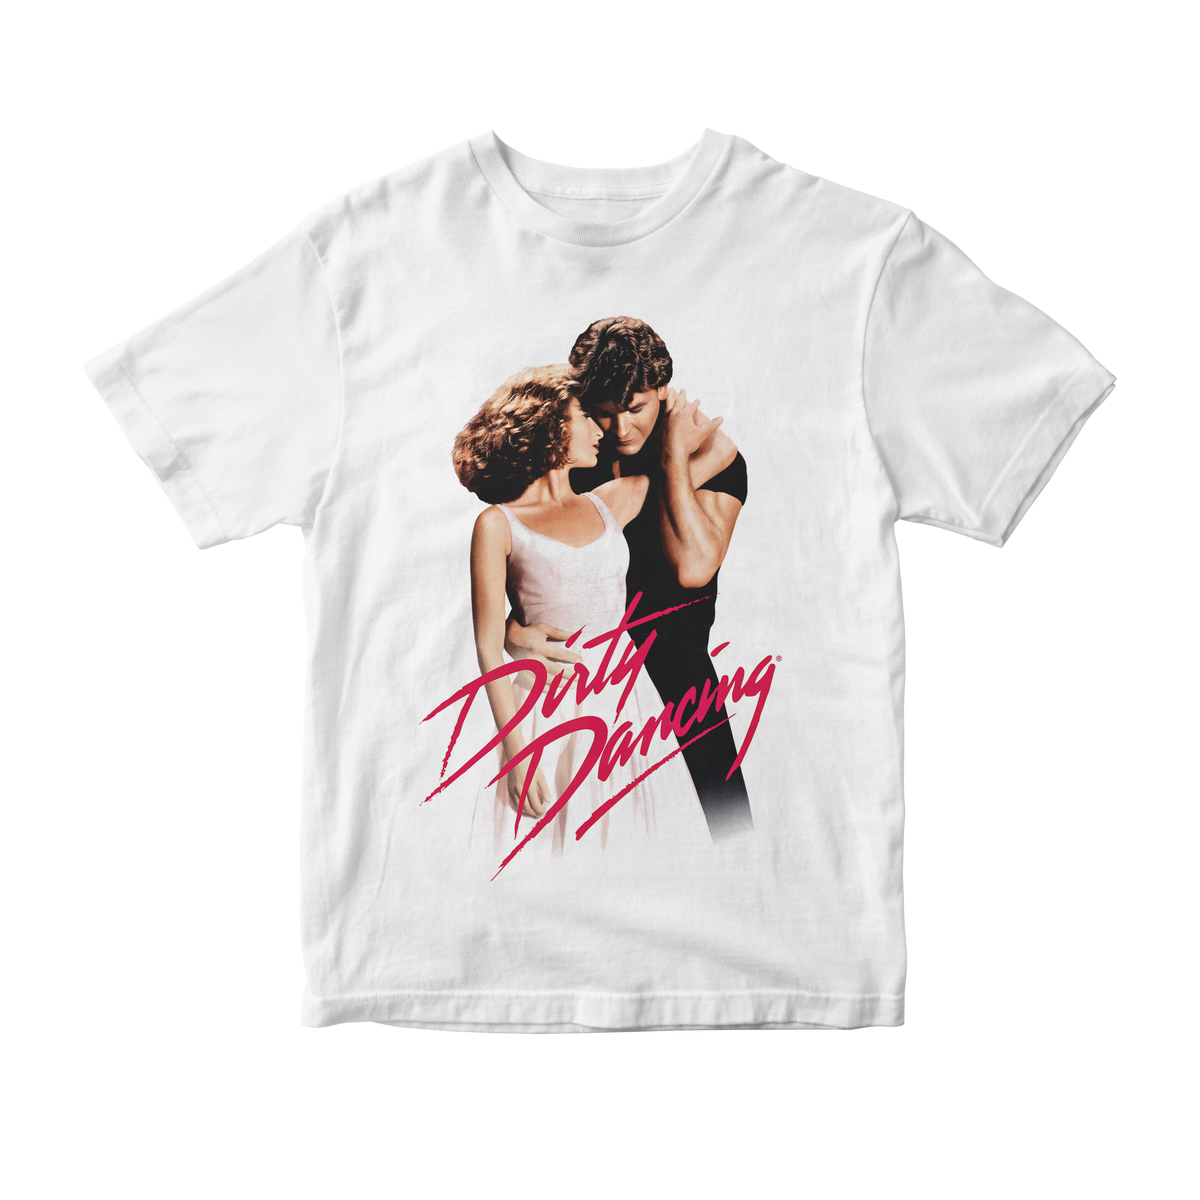 Nome do produto: Camiseta Dirty Dancing v2